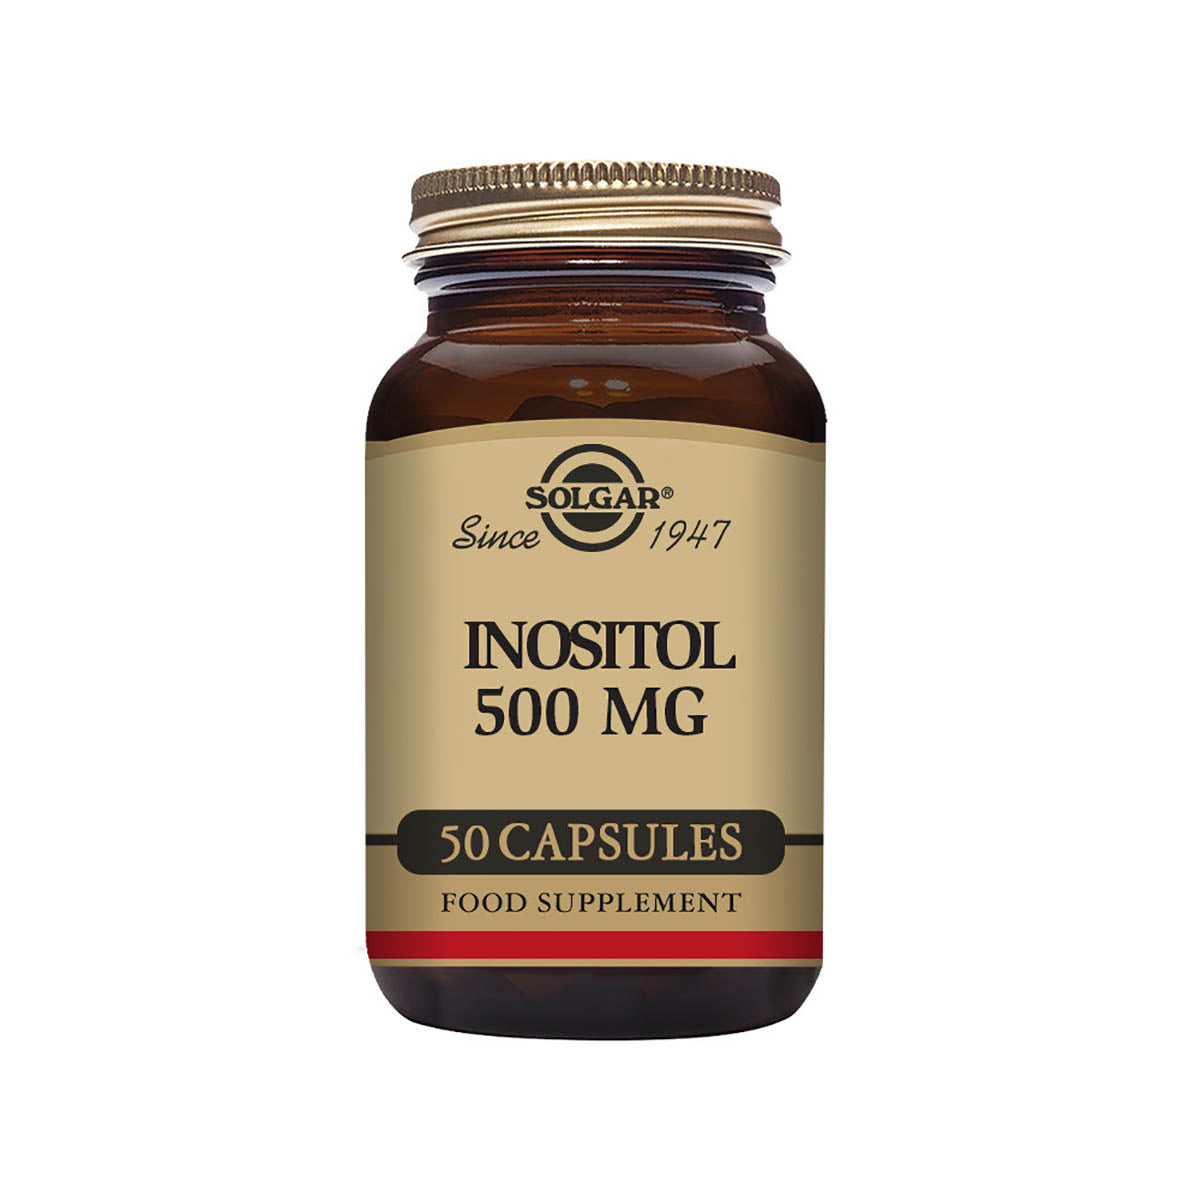 Solgar® Inositol 500 mg Vegetable Capsules - Pack of 50